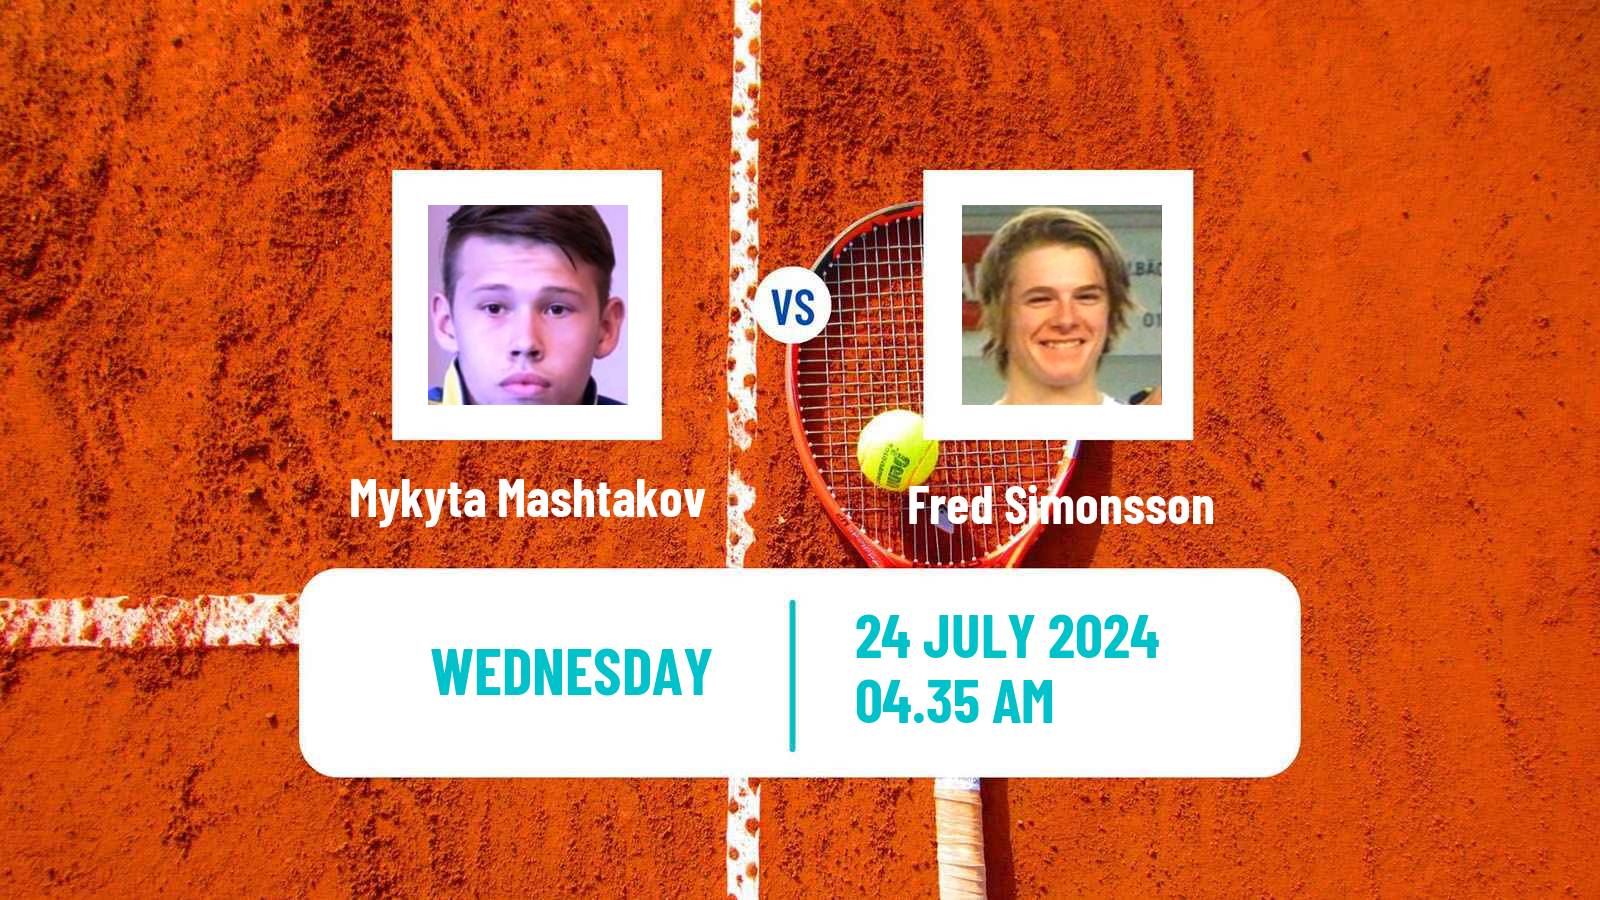 Tennis ITF M25 Kramsach Men Mykyta Mashtakov - Fred Simonsson